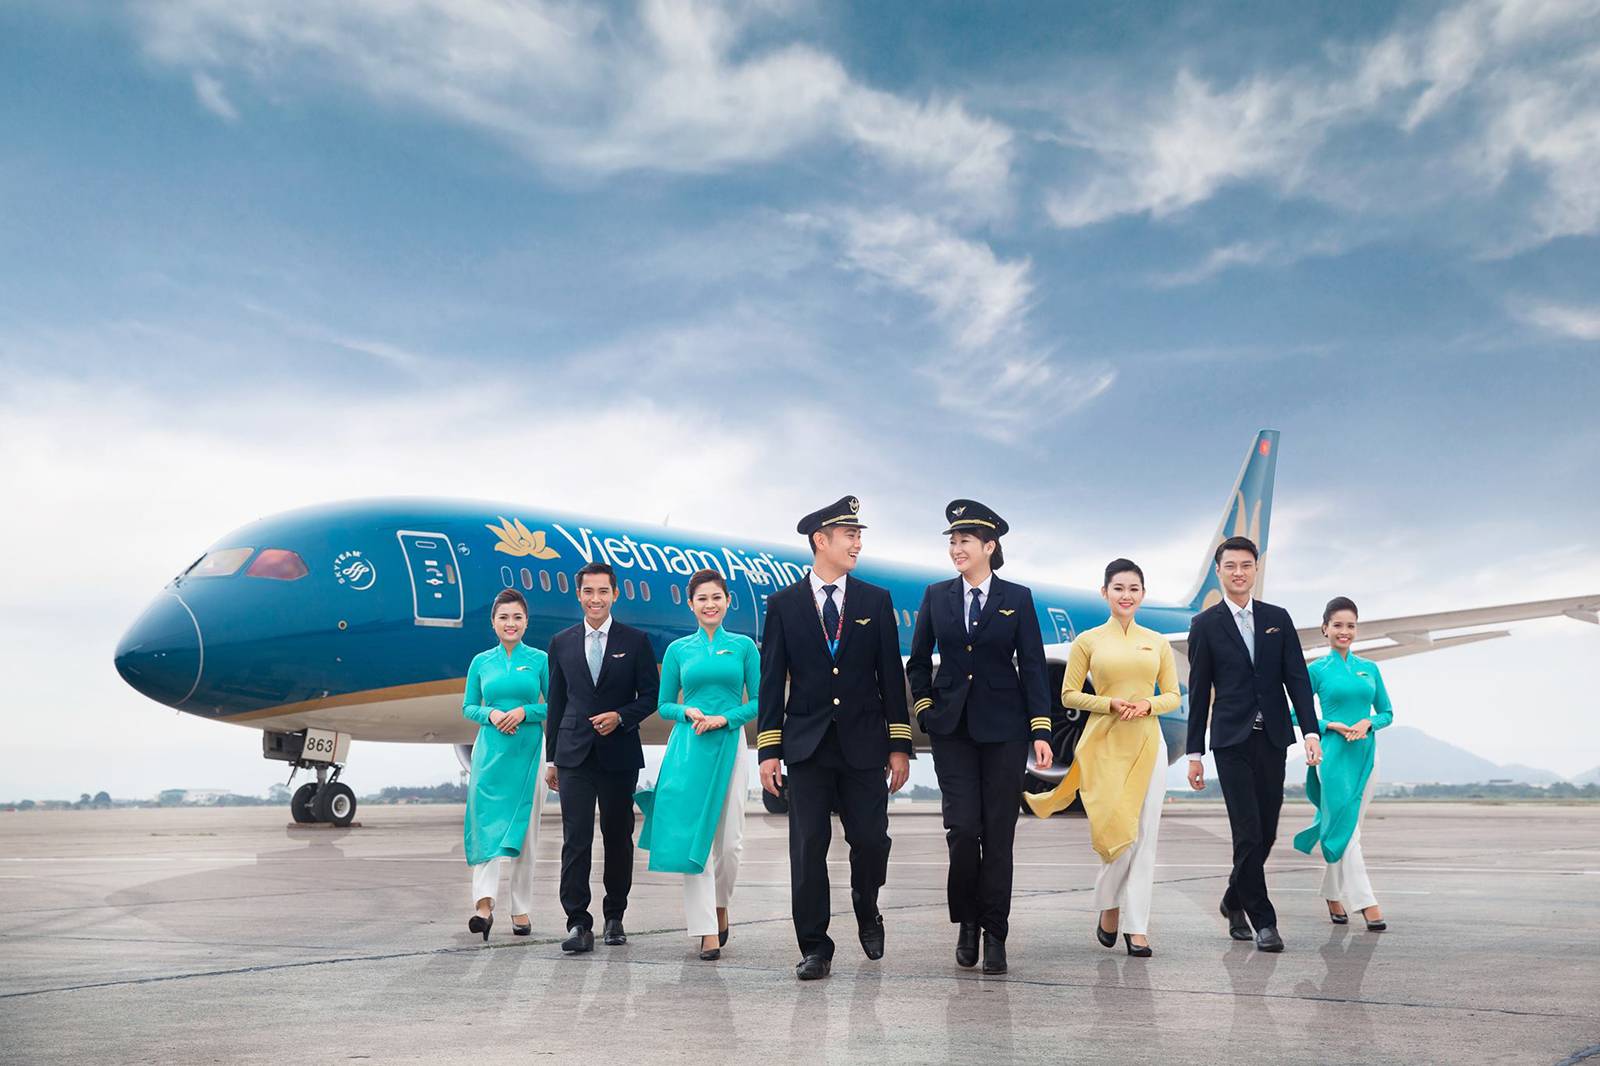 Вьетнамские авиалинии авиакомпания - официальный сайт vietnam airlines, контакты, авиабилеты и расписание рейсов вьетнам эйрлайнс 2022 - страница 2